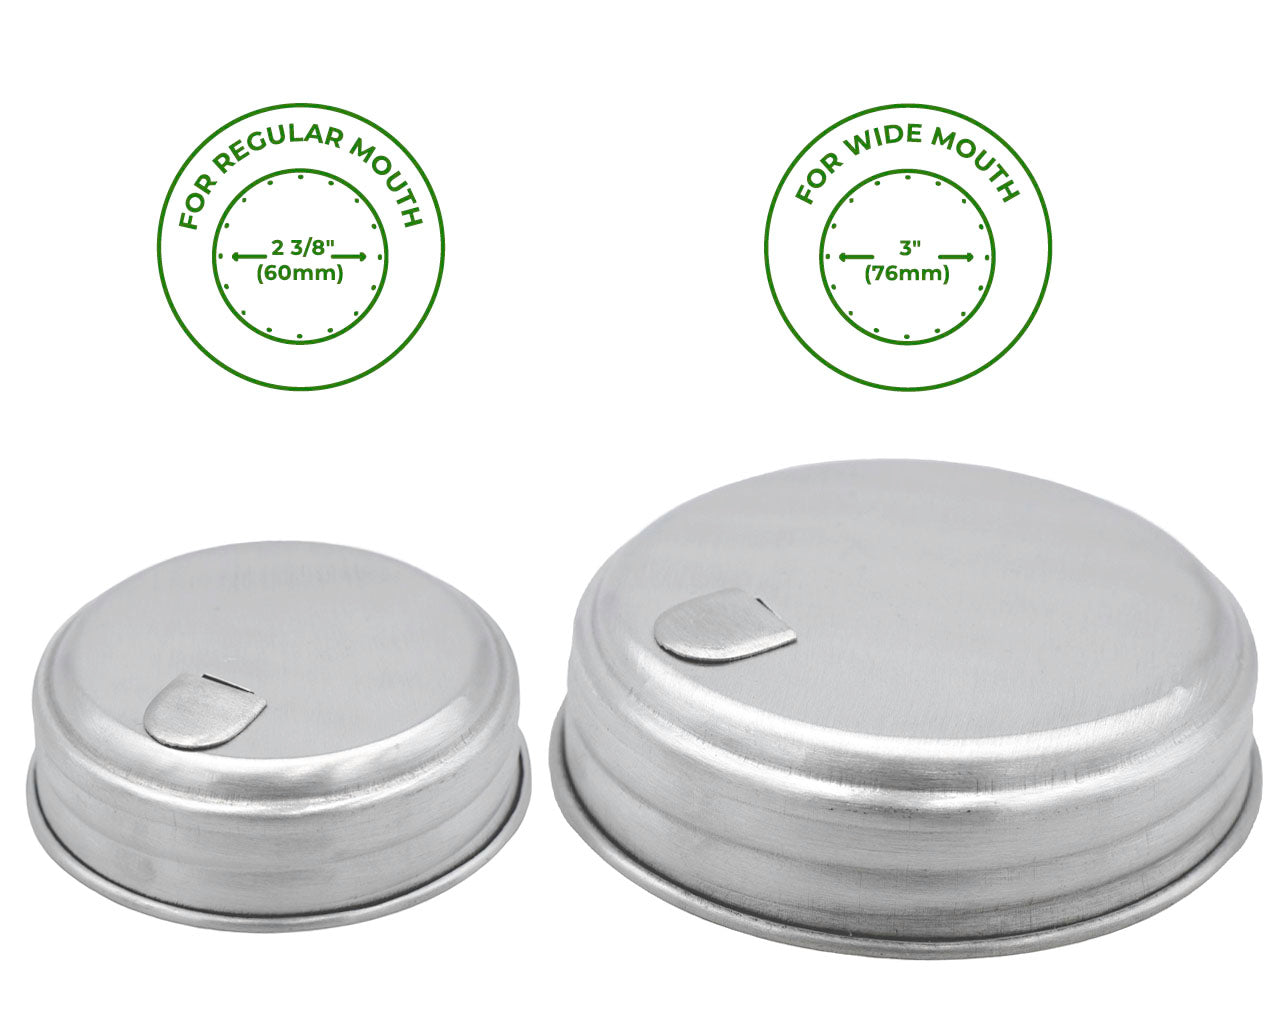 regular and wide mouth aluminum sugar dispensing lids